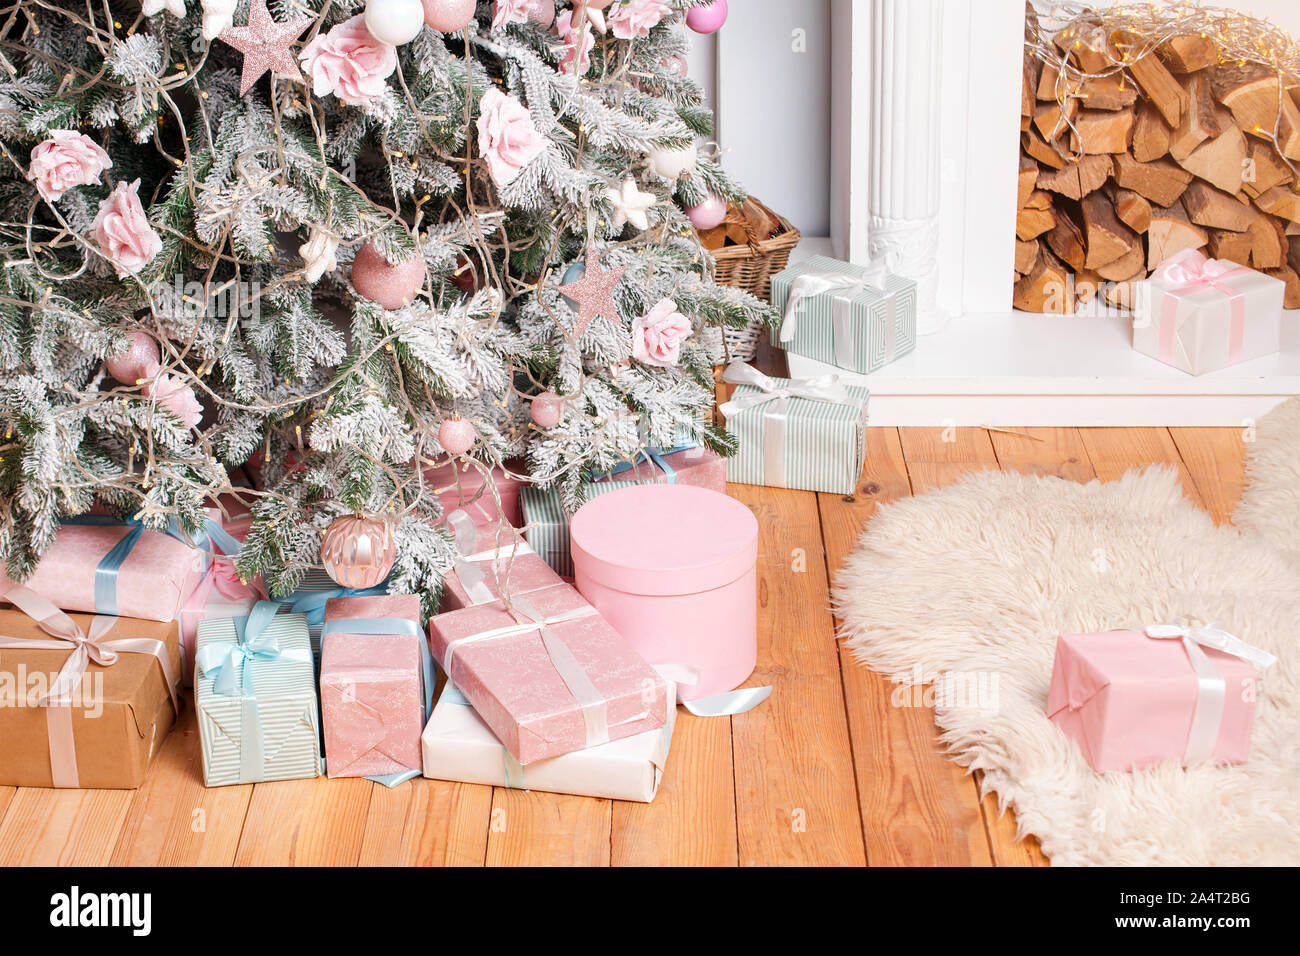 De beaux cadeaux de Noël sur le plancher près de sapin dans la salle avec cheminée. Des cadeaux de Noël et de décoration. Heureux Vacances d'hiver Banque D'Images